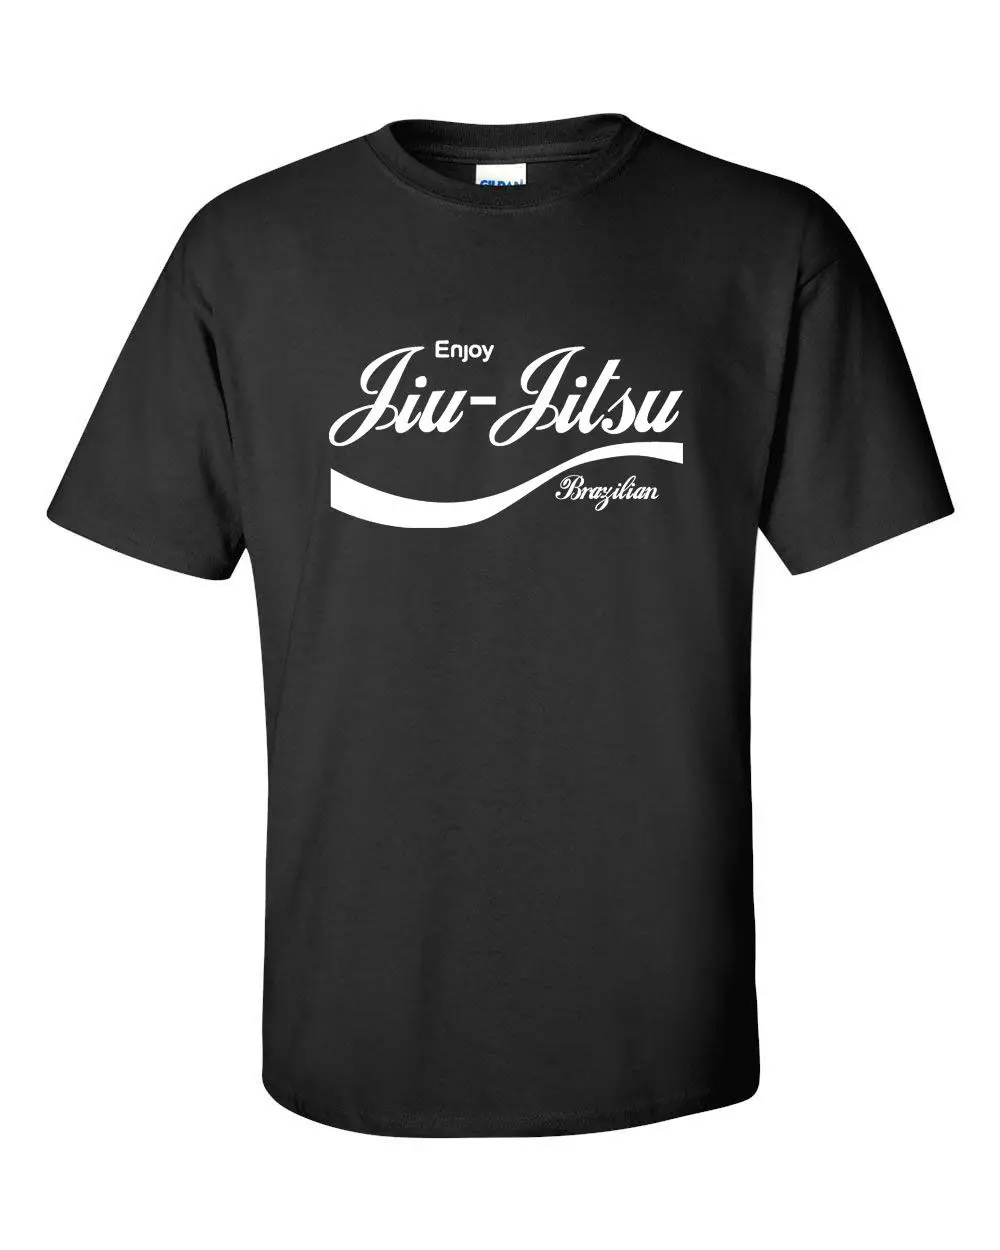 

Fashion Hot Sale Enjoy Jiu Jitsu Brazilian Workout Trainings Men'S Tee Shirt Tee Shirt Custom Gift Xs-5Xl New Popular